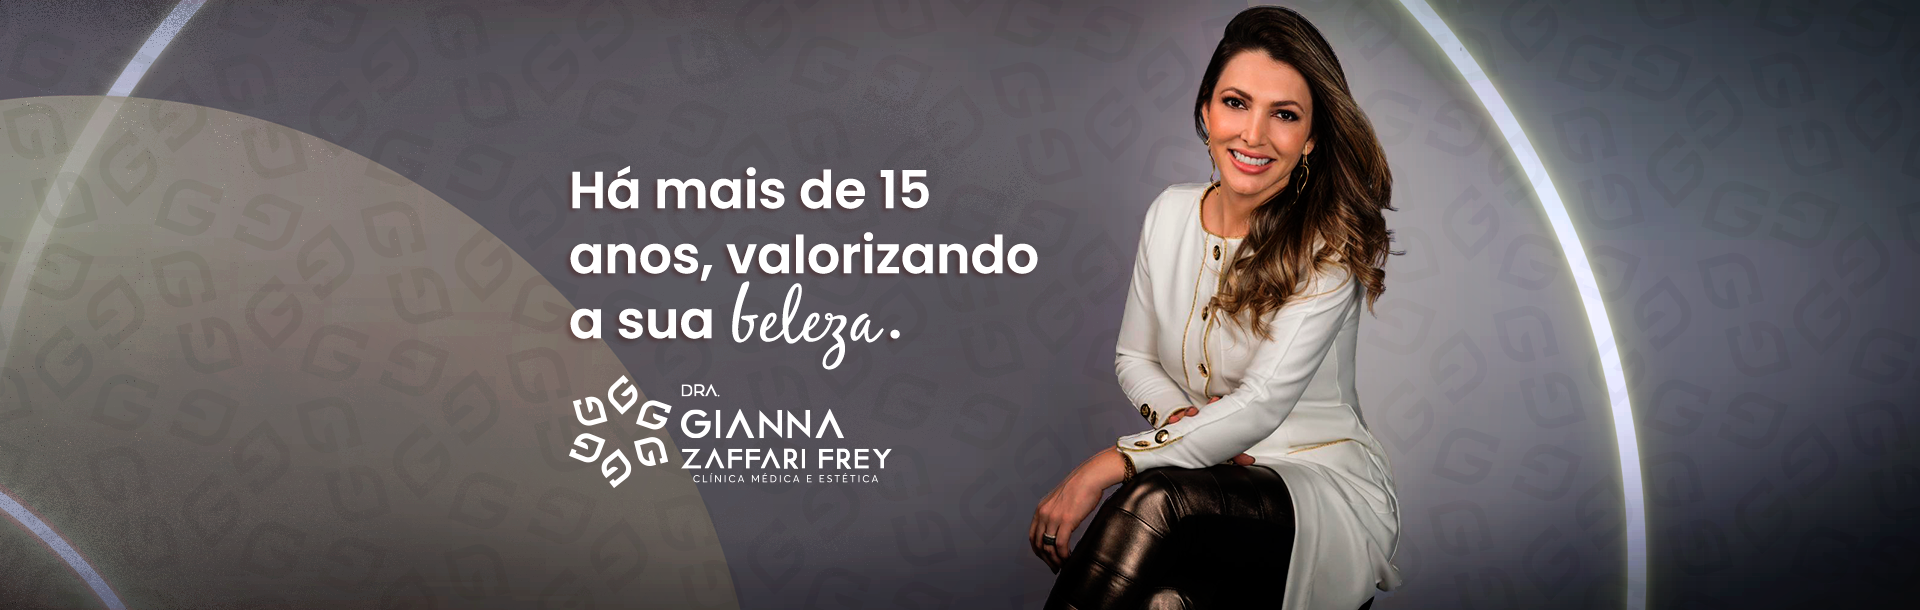 Conheça a Dra. Gianna Zaffari Frey